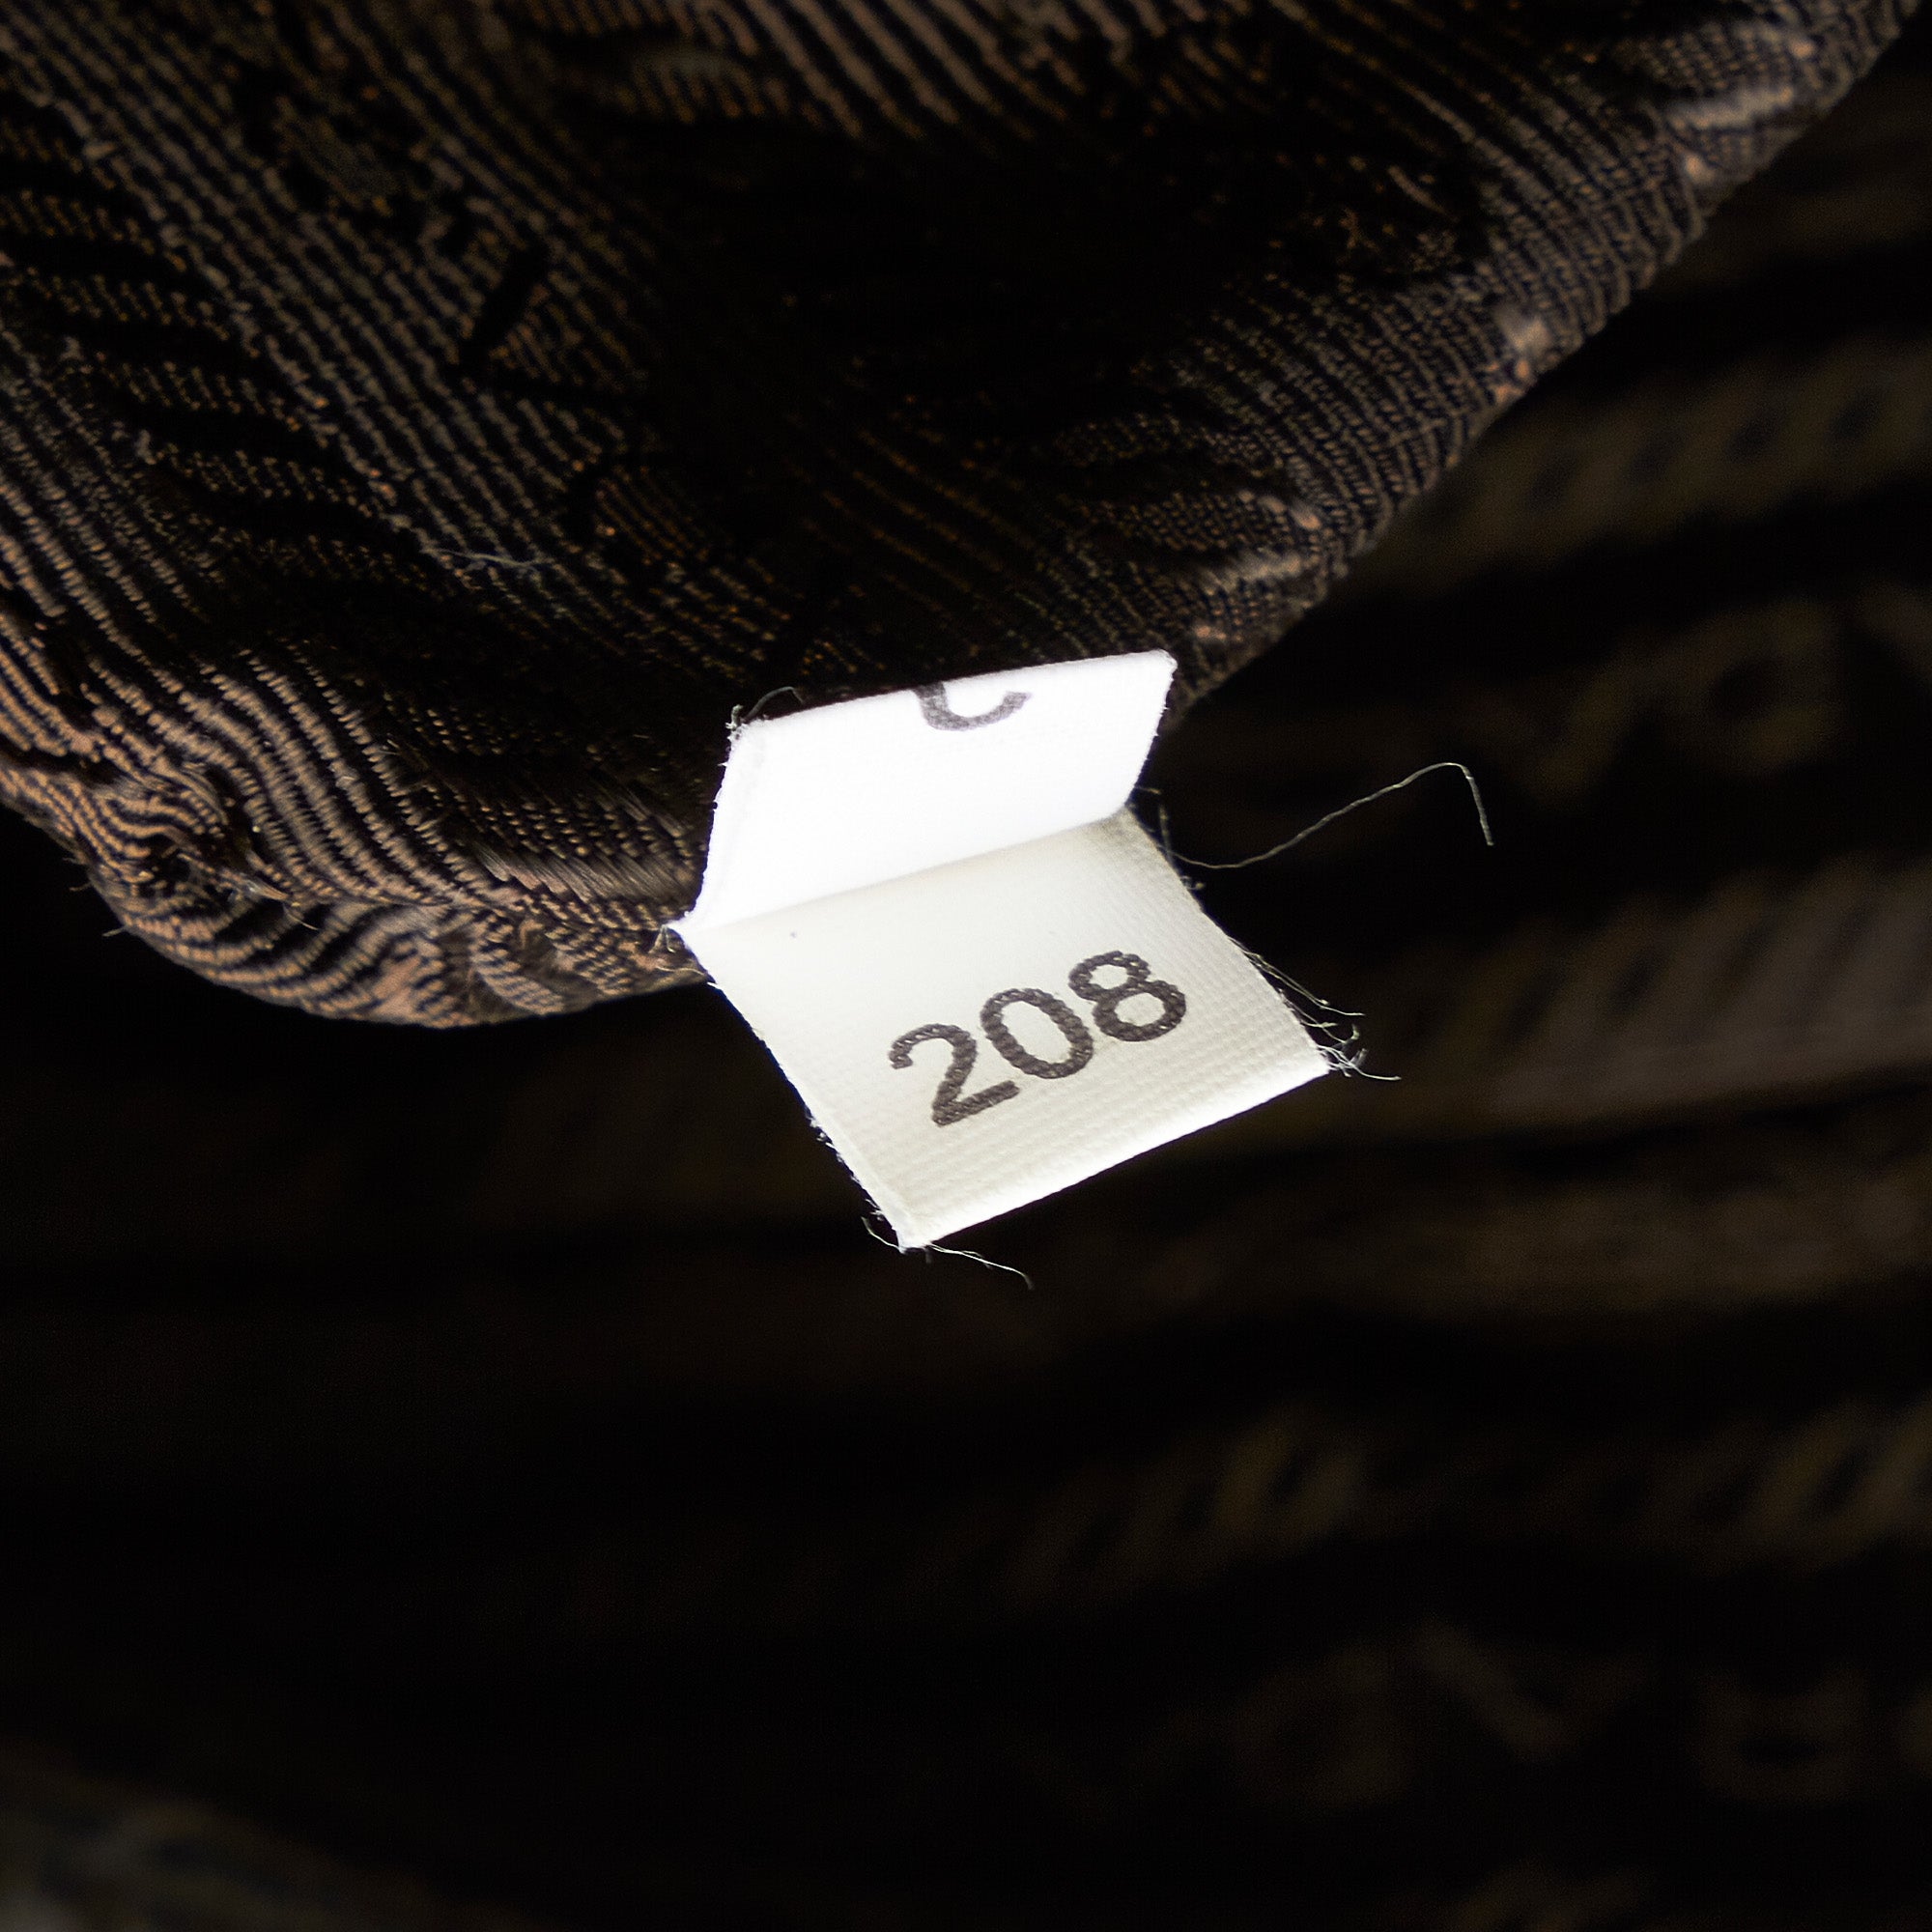 Black Prada Saffiano Business Bag – Designer Revival